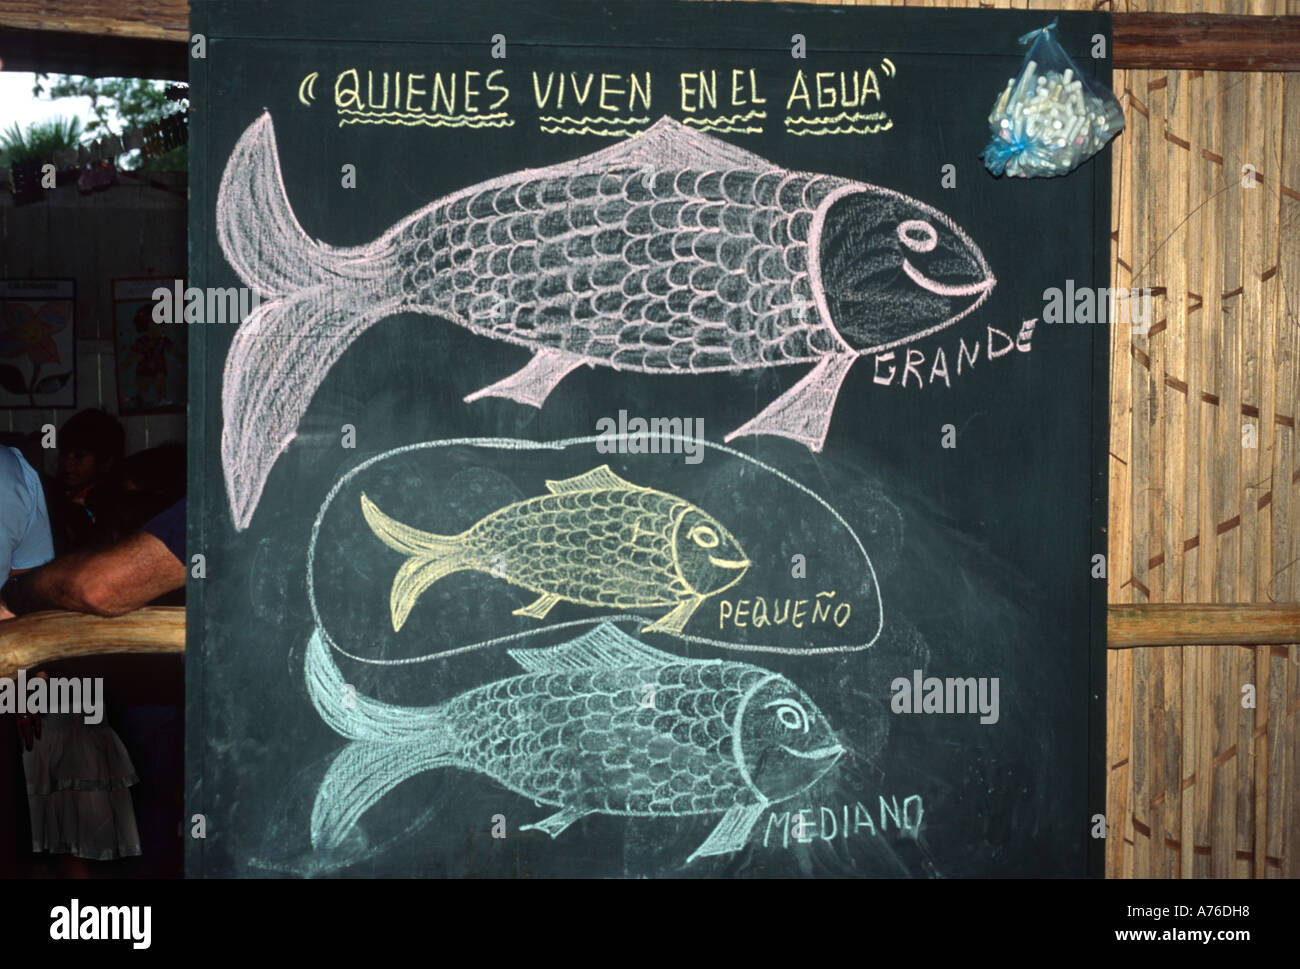 Tableau noir leçon avec des mots de vocabulaire espagnol pour les tailles de poissons, rural riverside scool, Amazonie péruvienne Banque D'Images